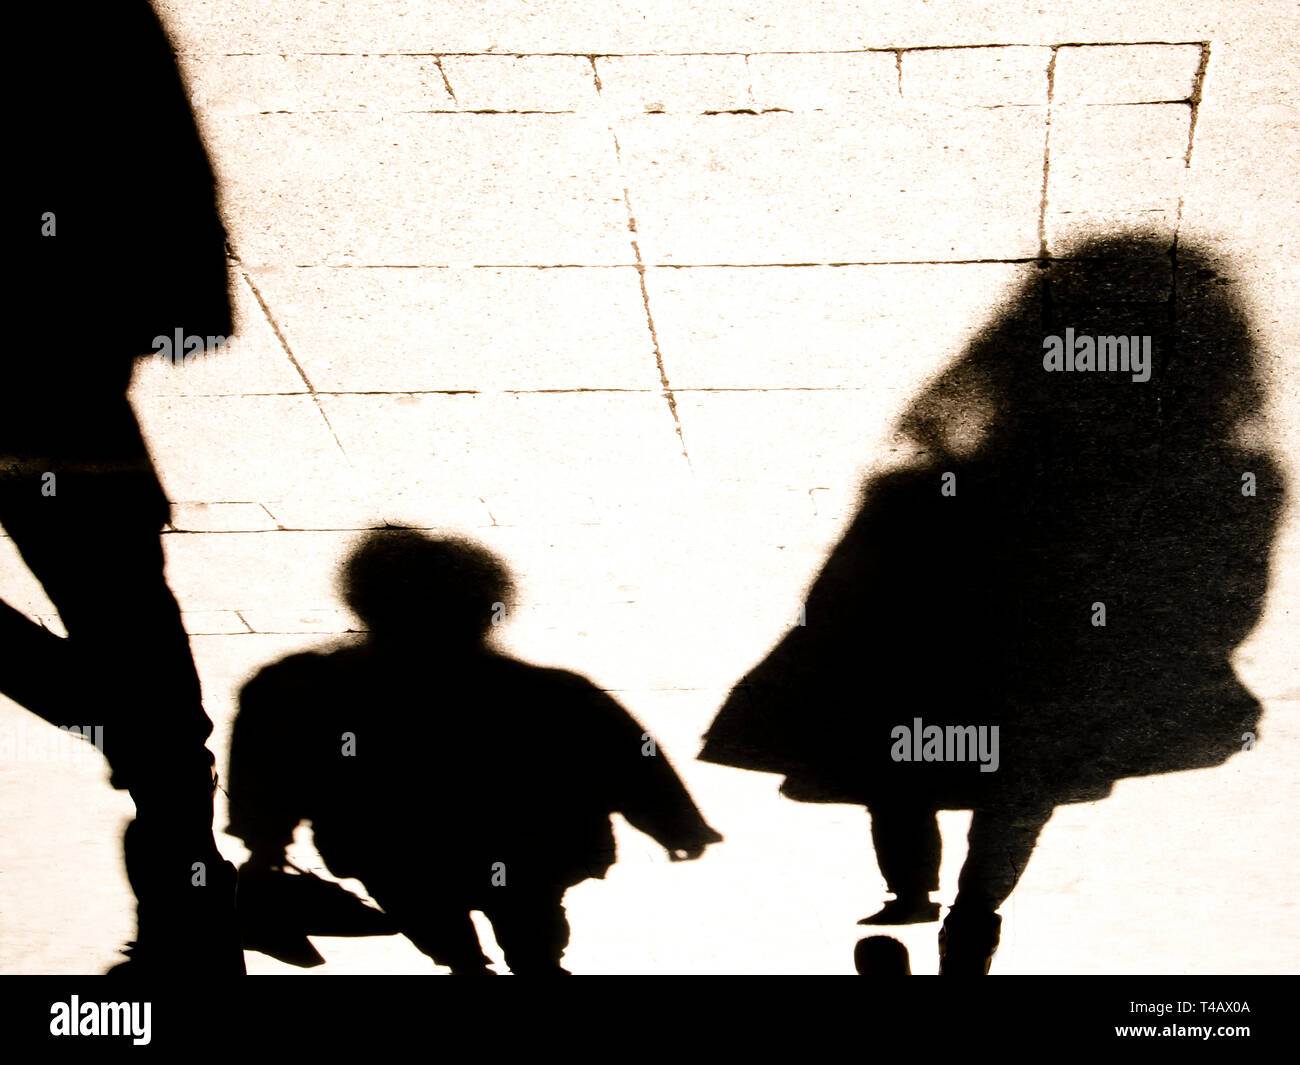 Sombra Blurrry silhouete de gente caminando en alto contraste en blanco y negro sepia Foto de stock